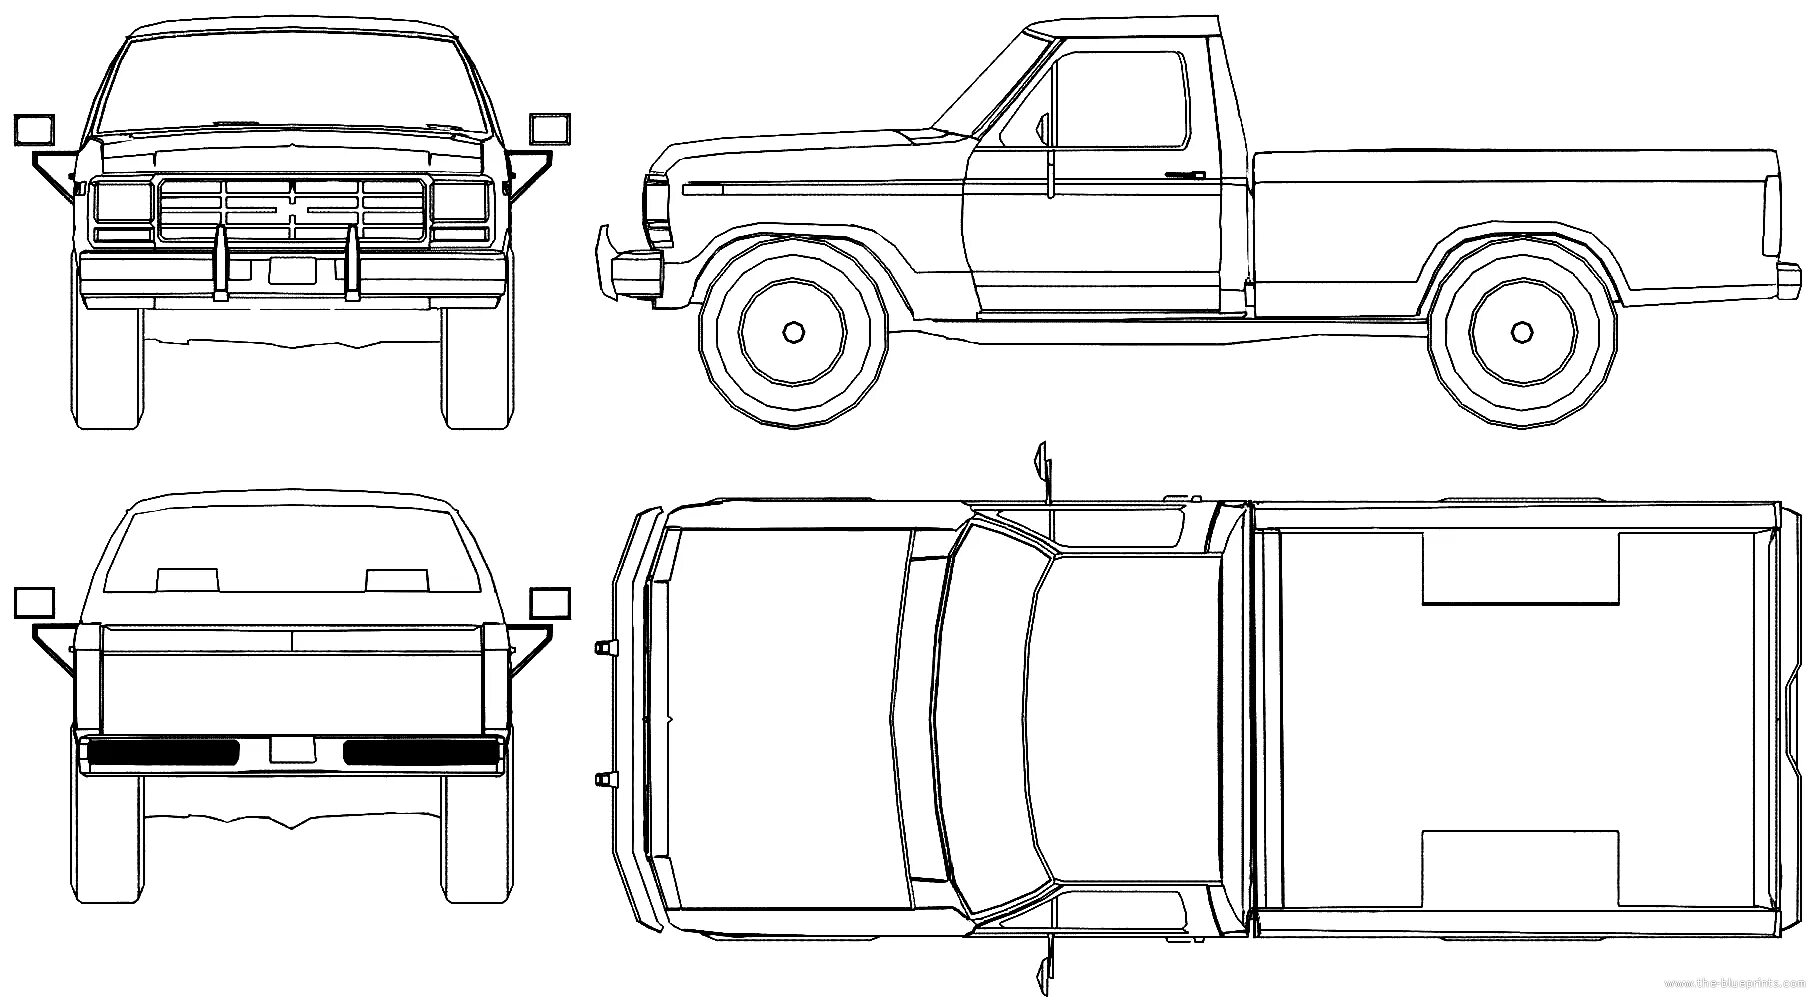 Ford f150 Blueprints. Ford f100 Blueprint. Ford f 100 чертежи. Форд f 150 1980 чертеж. Пикап план